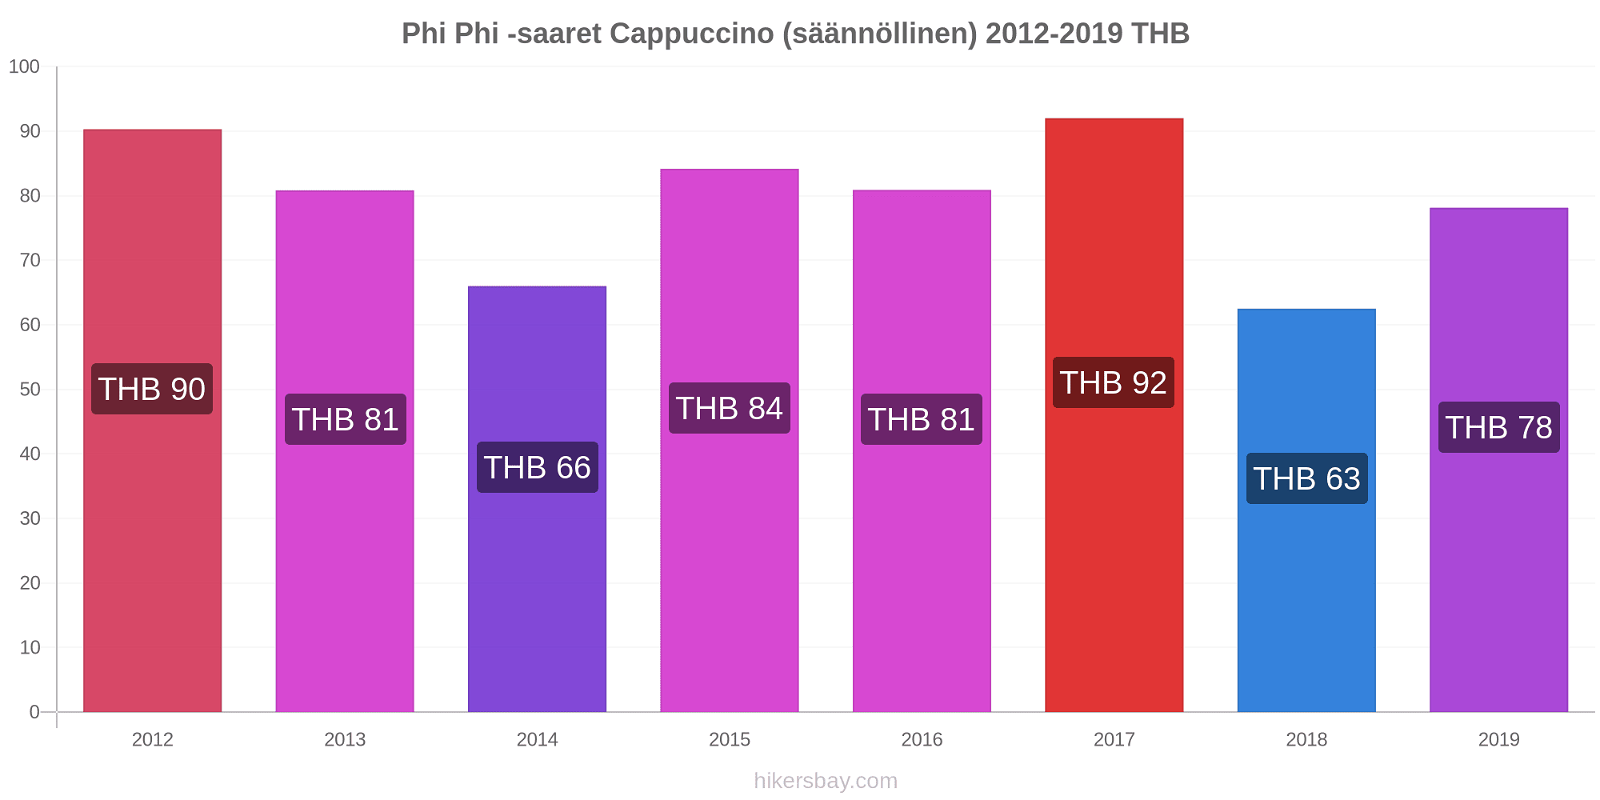 Phi Phi -saaret hintojen muutokset Cappuccino (säännöllinen) hikersbay.com